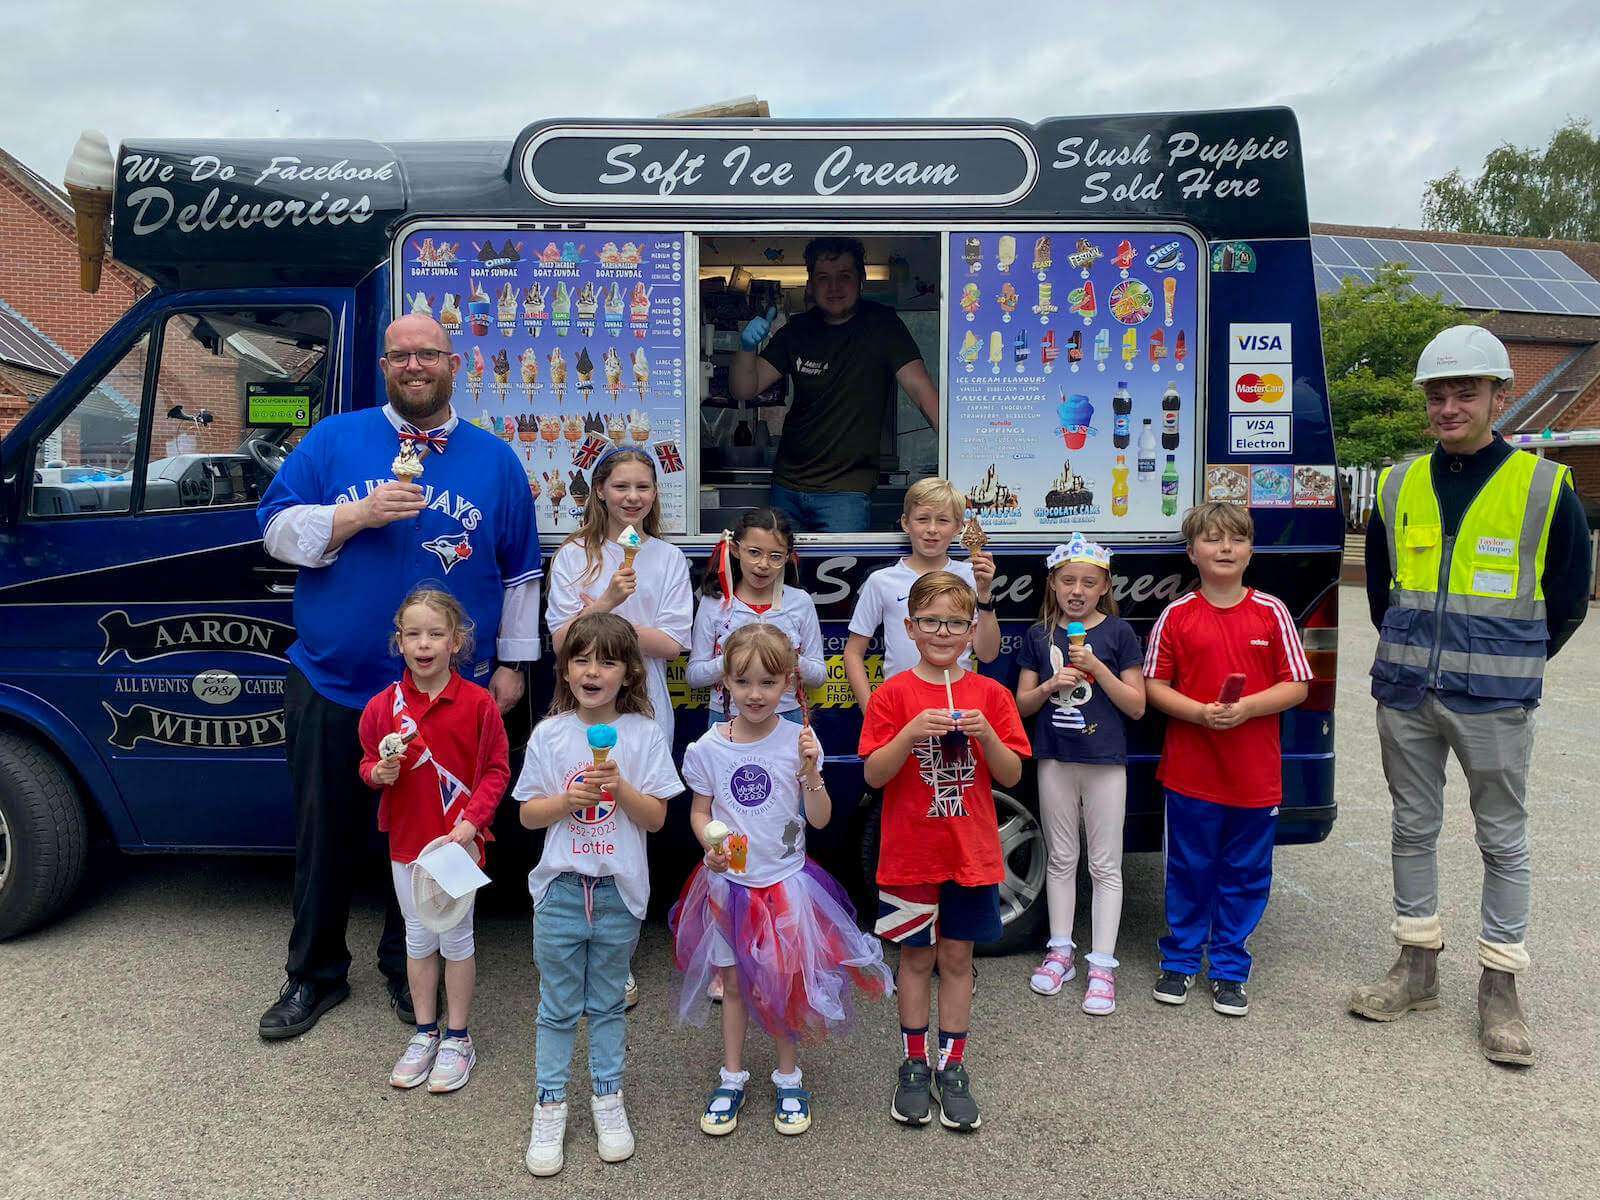 Children standing by ice cream van